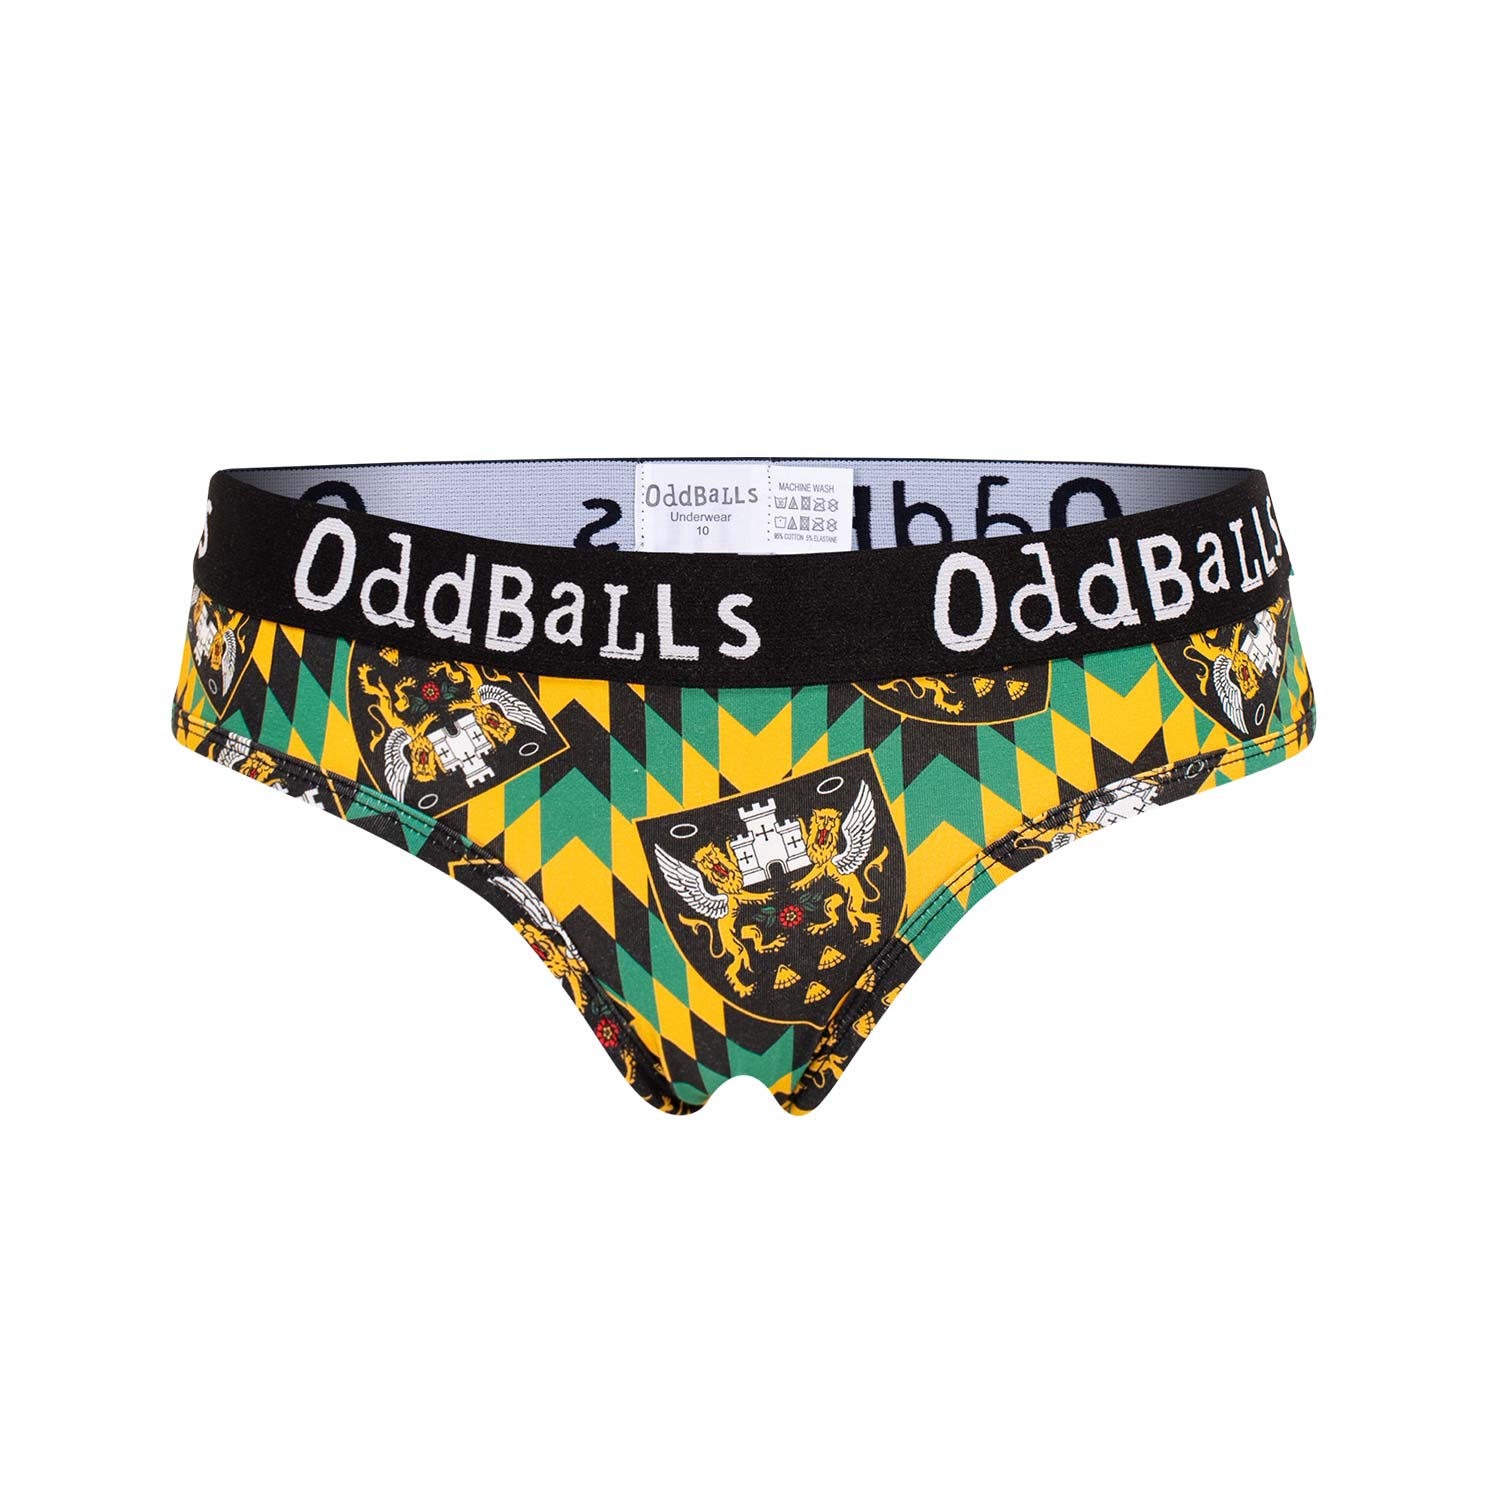 Oddballs 23 Ladies Briefs